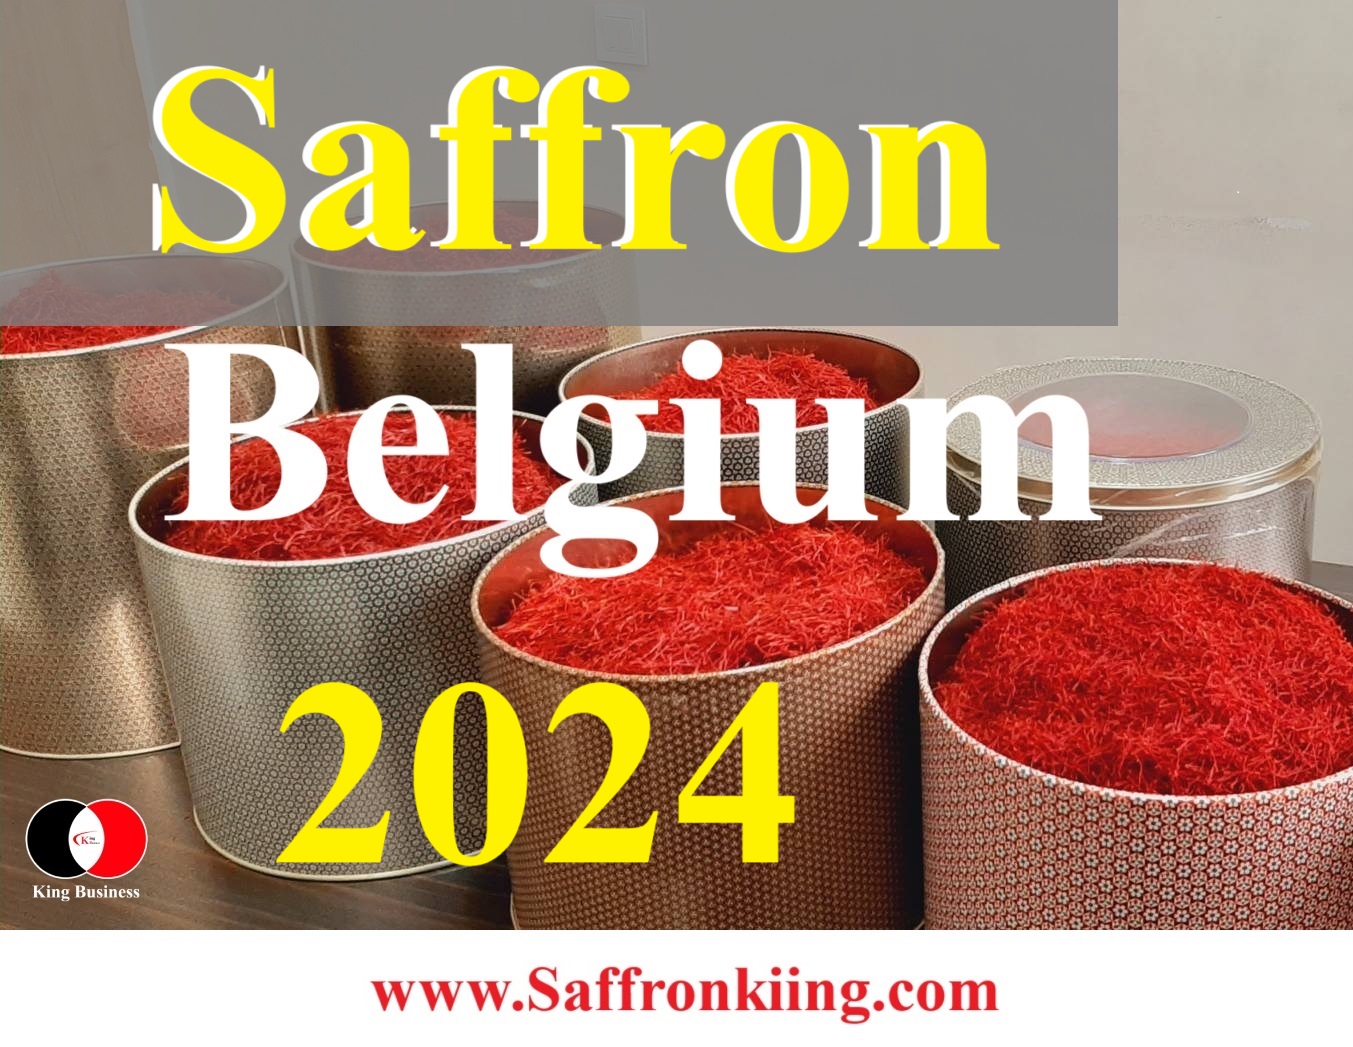 Premium Saffron in Brussel